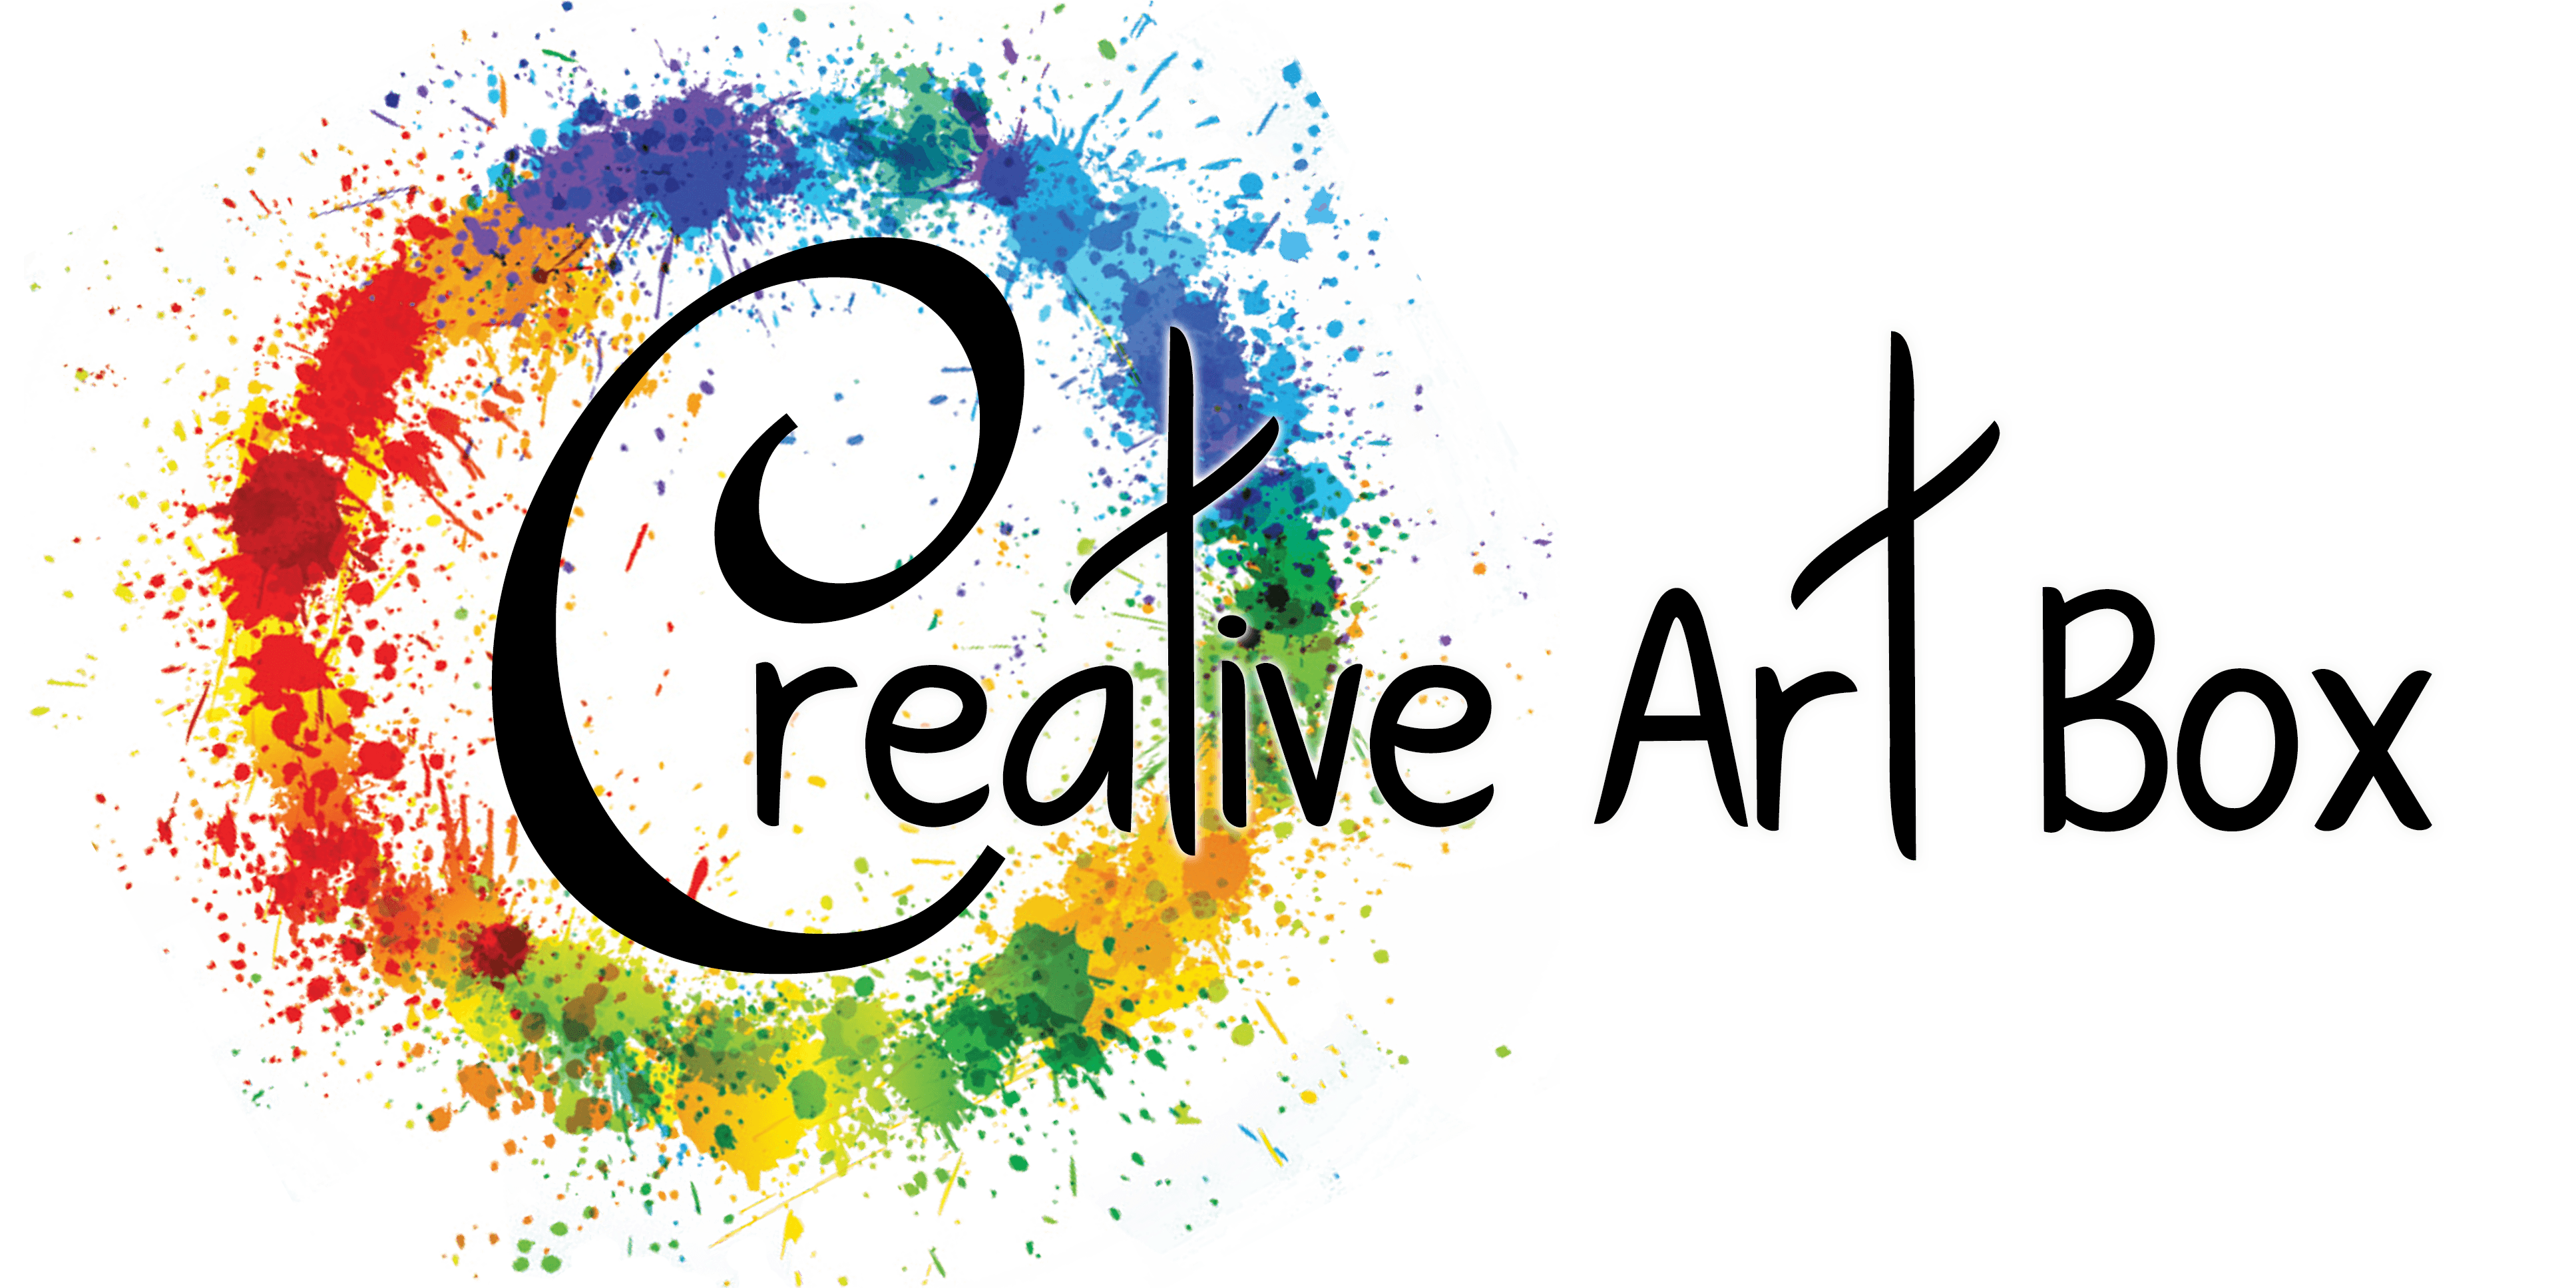 Creative Artist Logo - Creative Art Box - Featured Artists